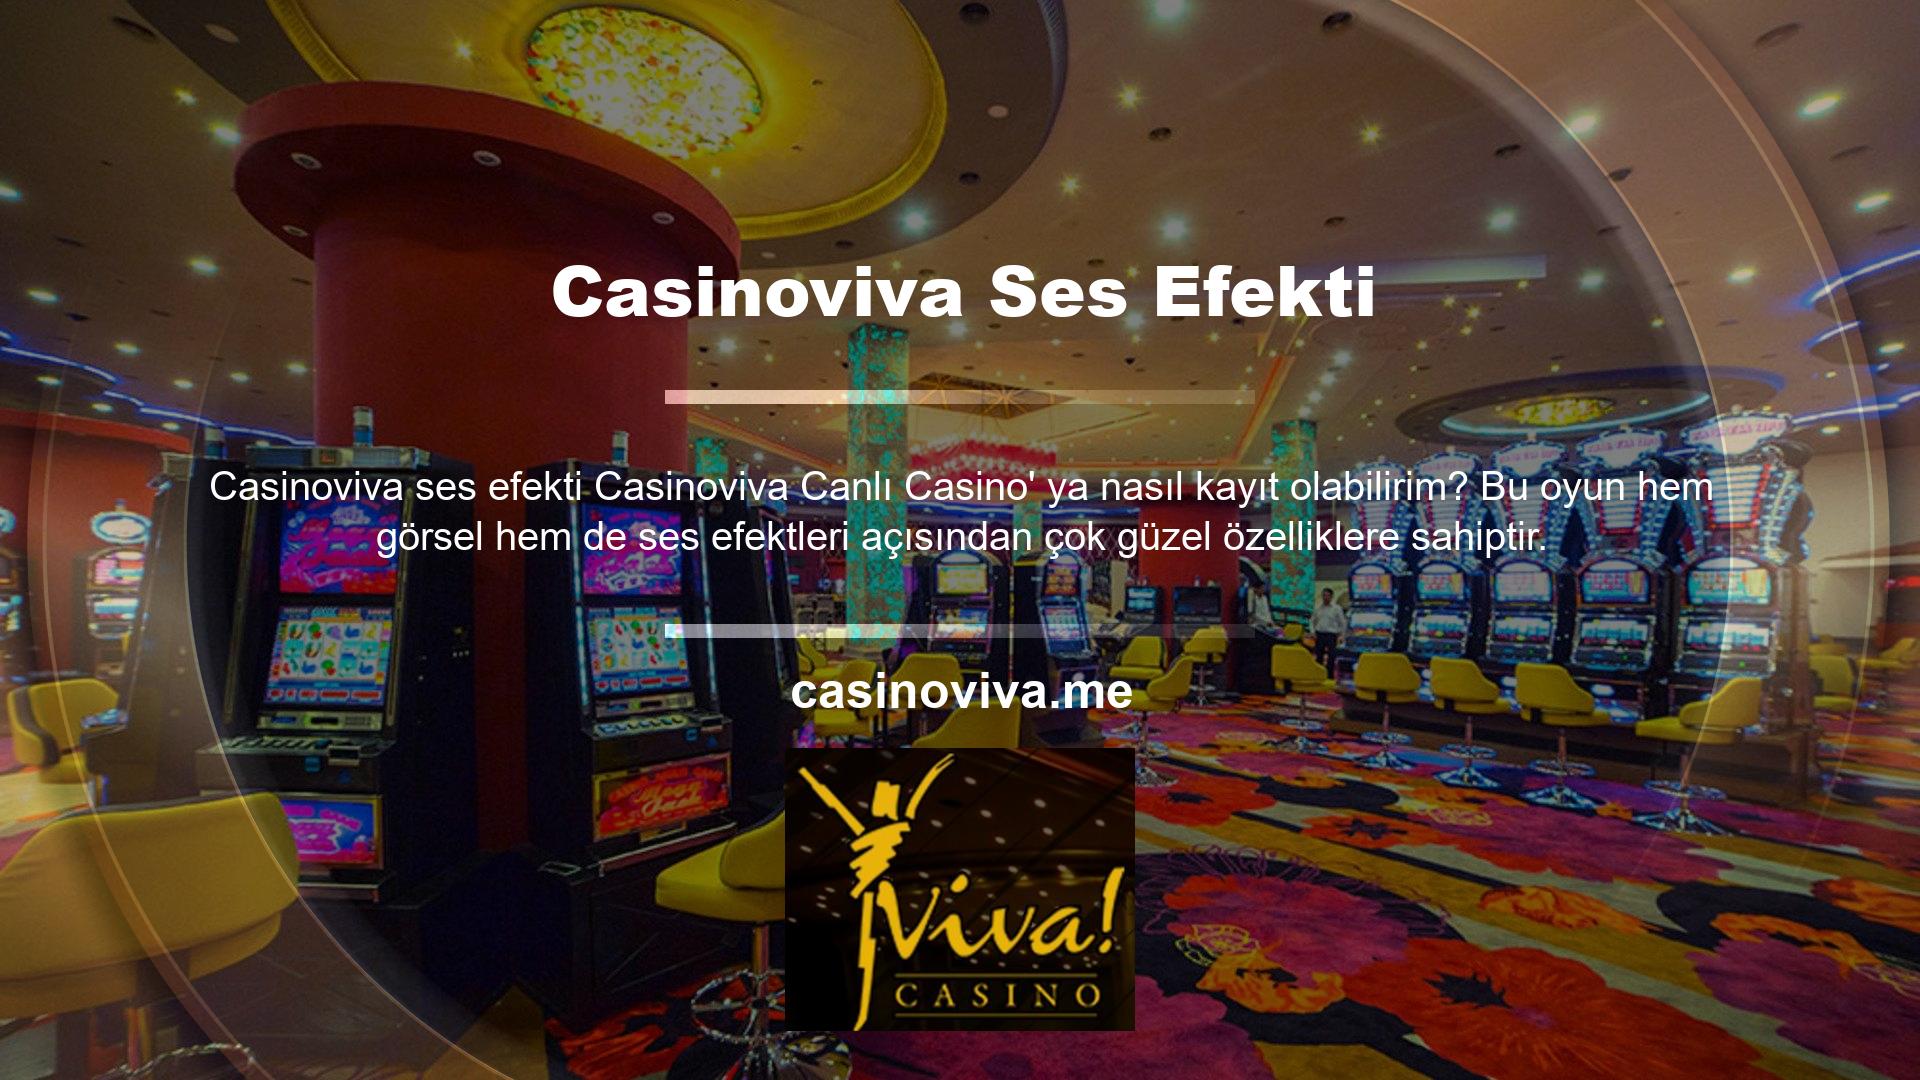 Casinoviva sitesinde yer alan oyunların tamamı casino tutkunlarının kaprislerini tatmin edebilecek seviyededir